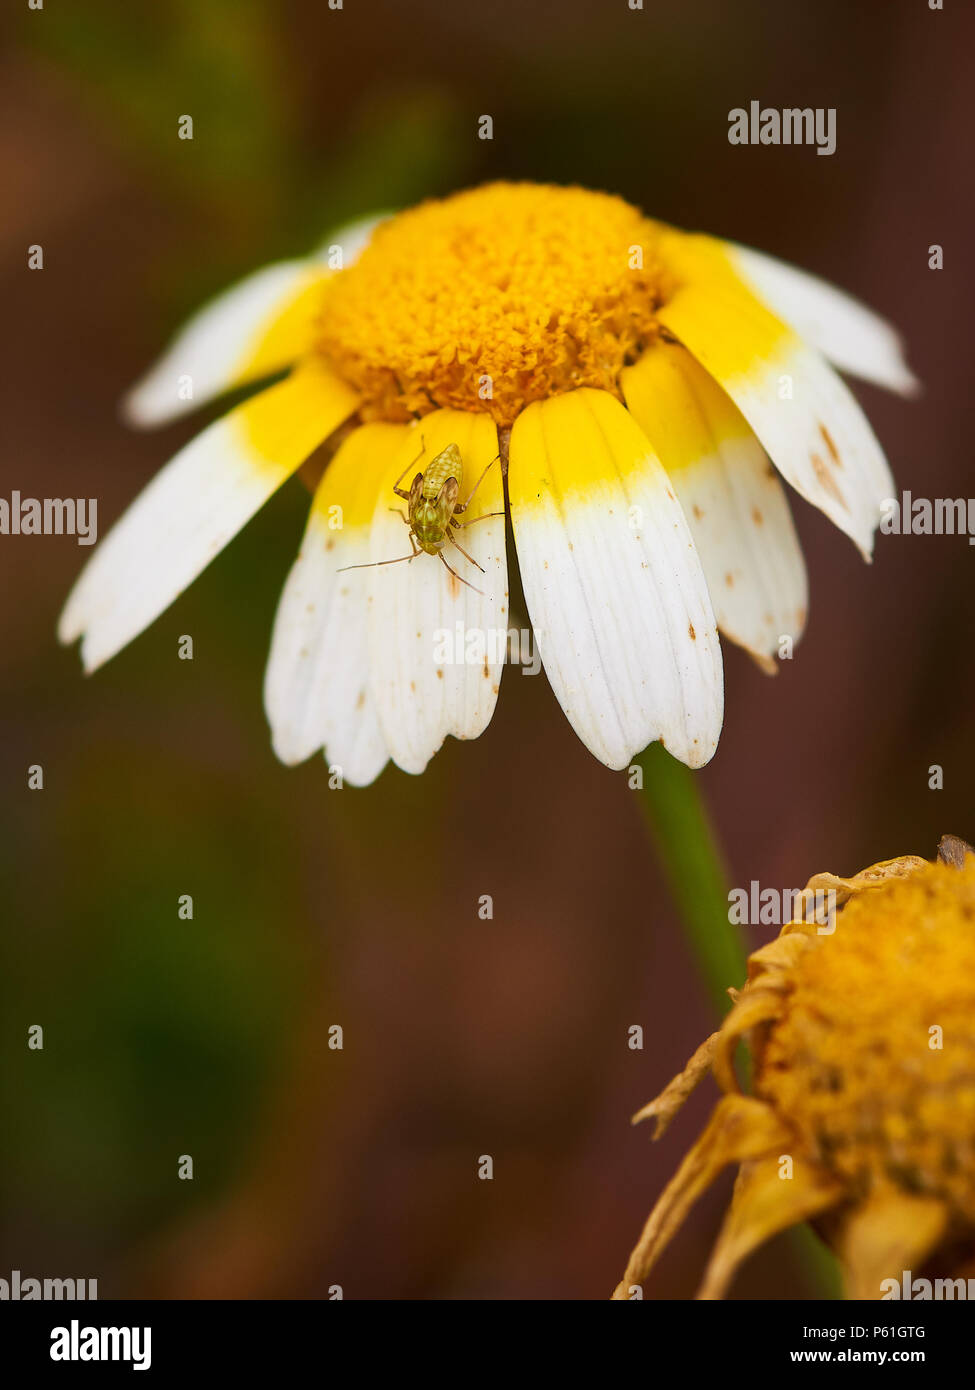 Makro Detail eines Insekts der Ordnung Hemiptera über daisy flower (Glebionis coronaria) in Ses Salines Naturpark (Formentera, Balearen, Spanien) Stockfoto